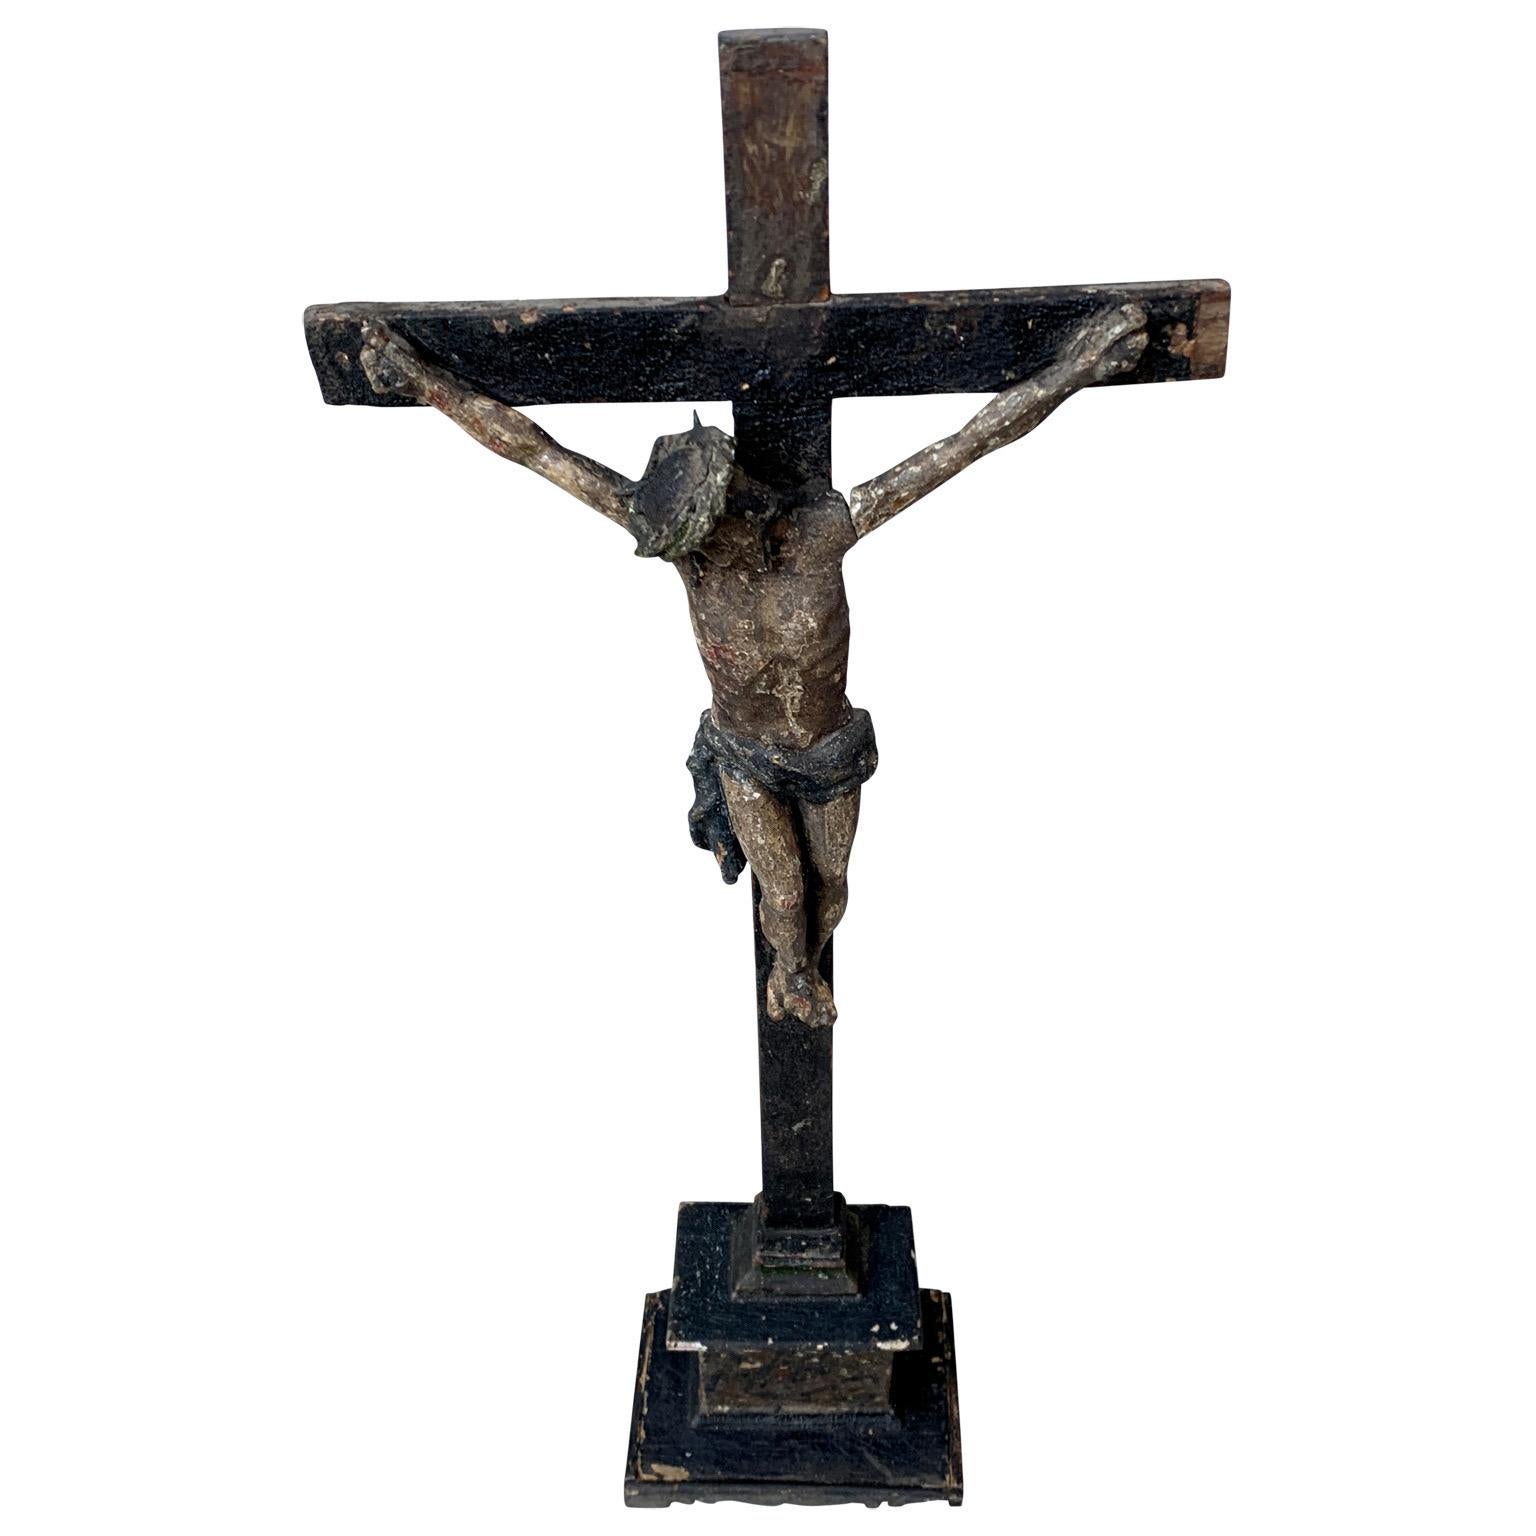 Ein antikes, handgeschnitztes und polychromiertes, handbemaltes Tischkruzifix aus Frankreich aus dem frühen 18. Jahrhundert, das seine ursprüngliche Patina bewahrt hat.
Dieses Kruzifix könnte bereits aus der Mitte oder dem Ende des 17. Jahrhunderts